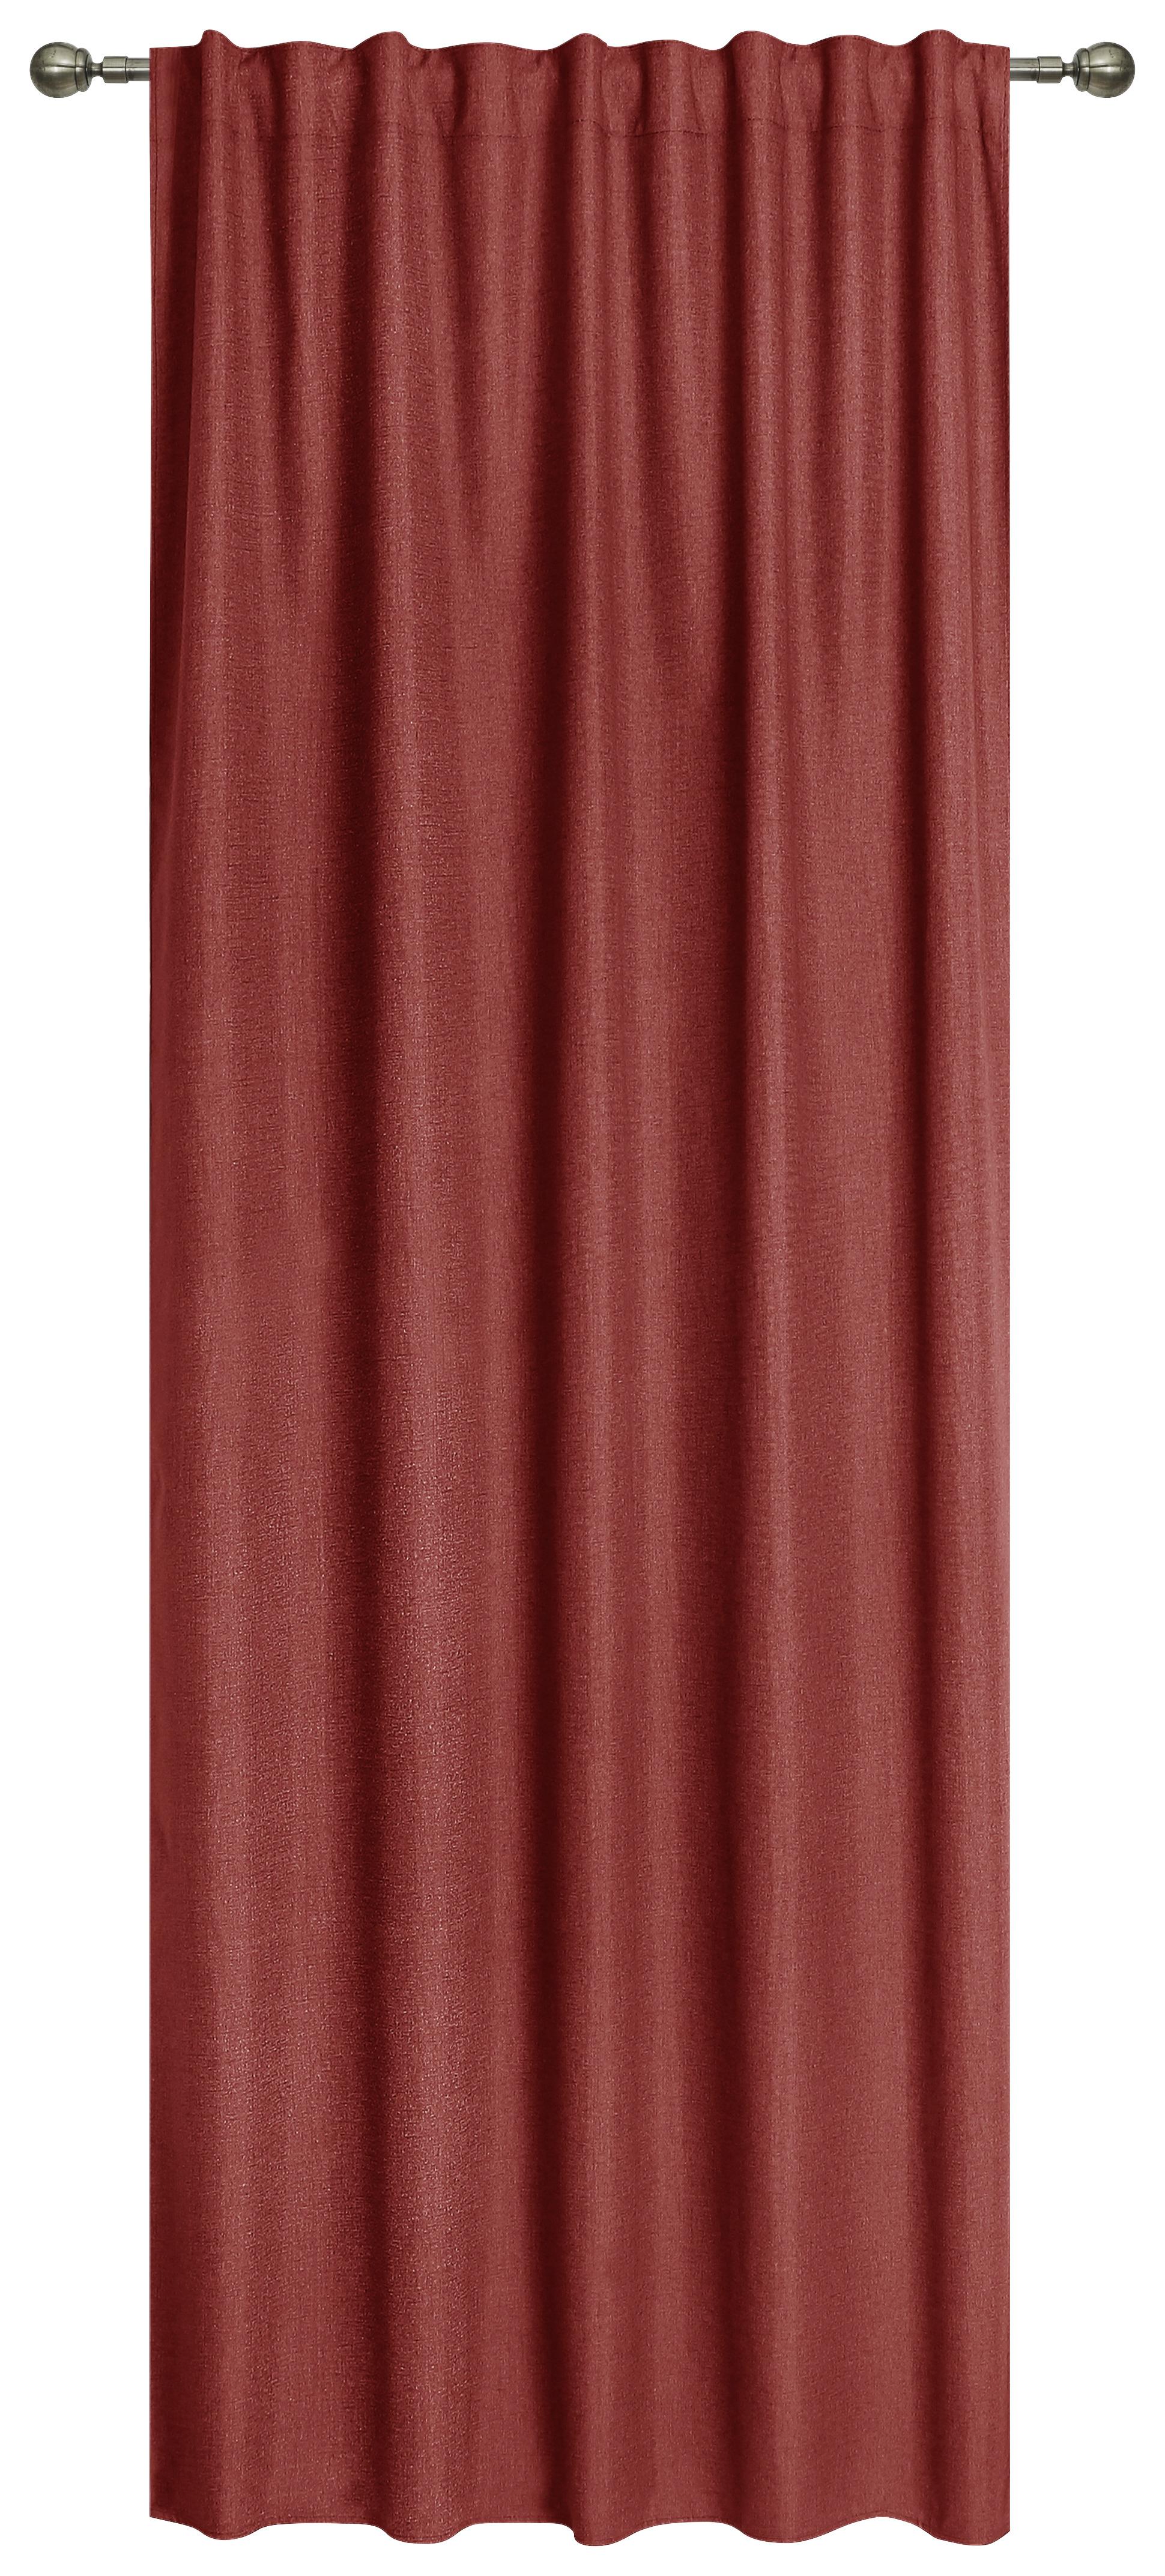 Készfüggöny Ohio - Piros, romantikus/Landhaus, Textil (140/245cm) - James Wood